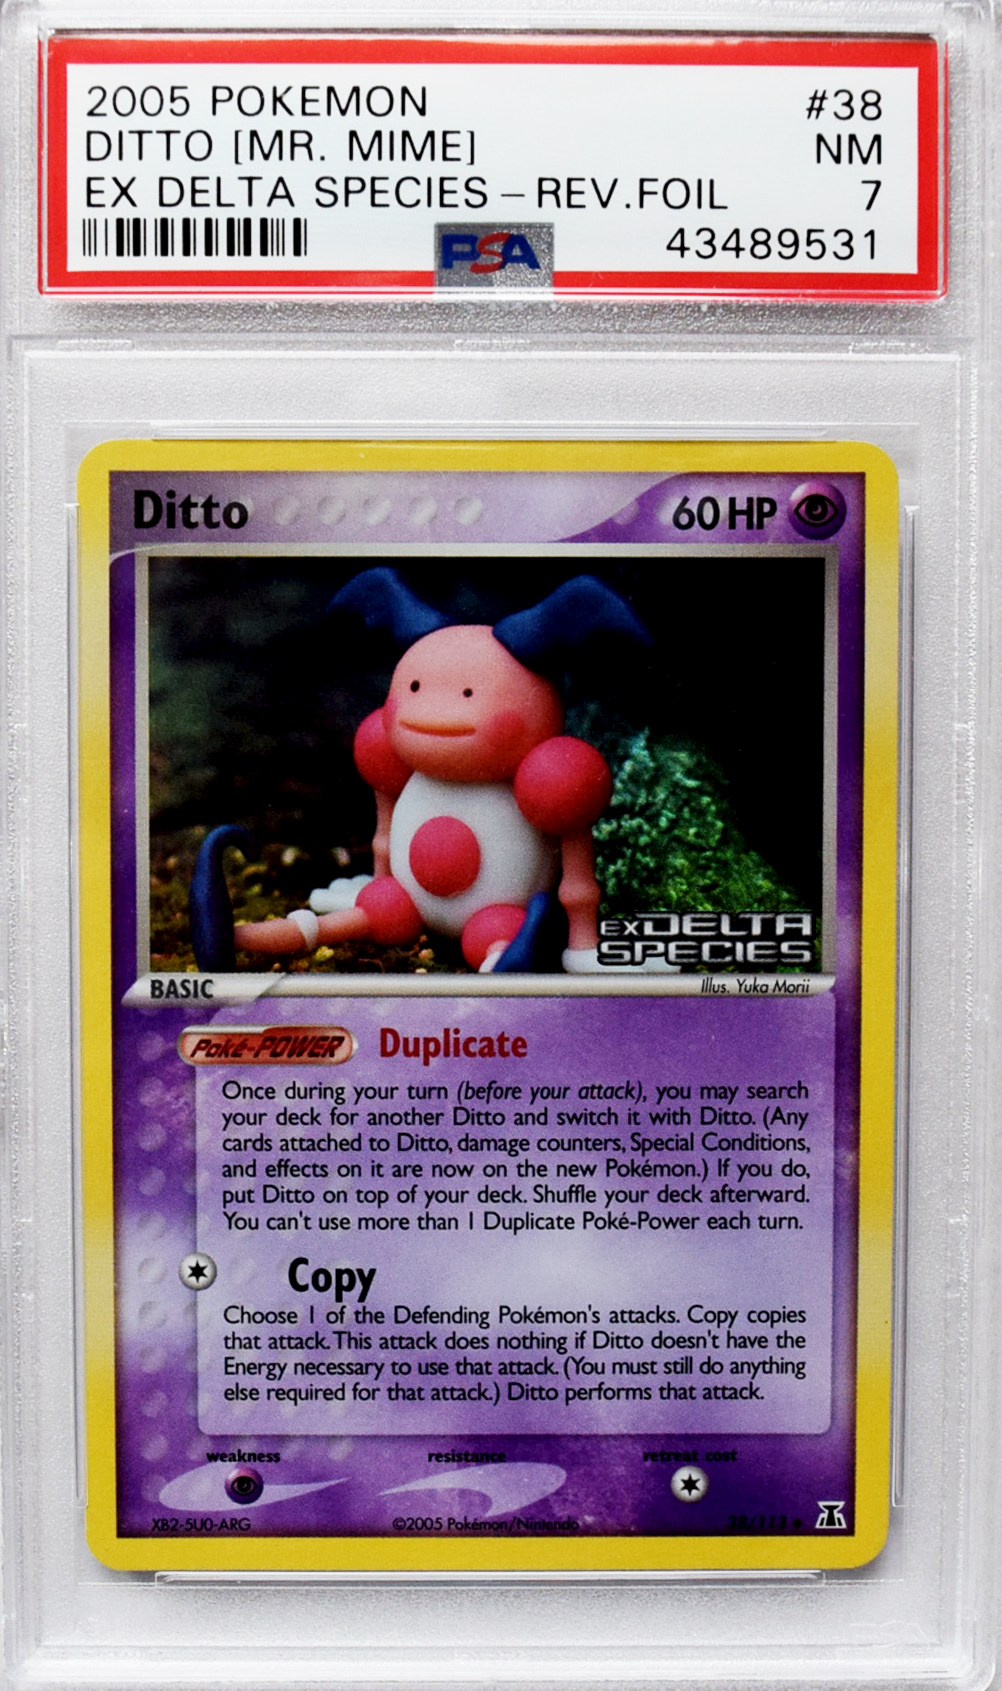 2005 Pokemon EX Delta Species - Ditto [Mr. Mime] (#38) - REV.FOIL - PSA 7 NM